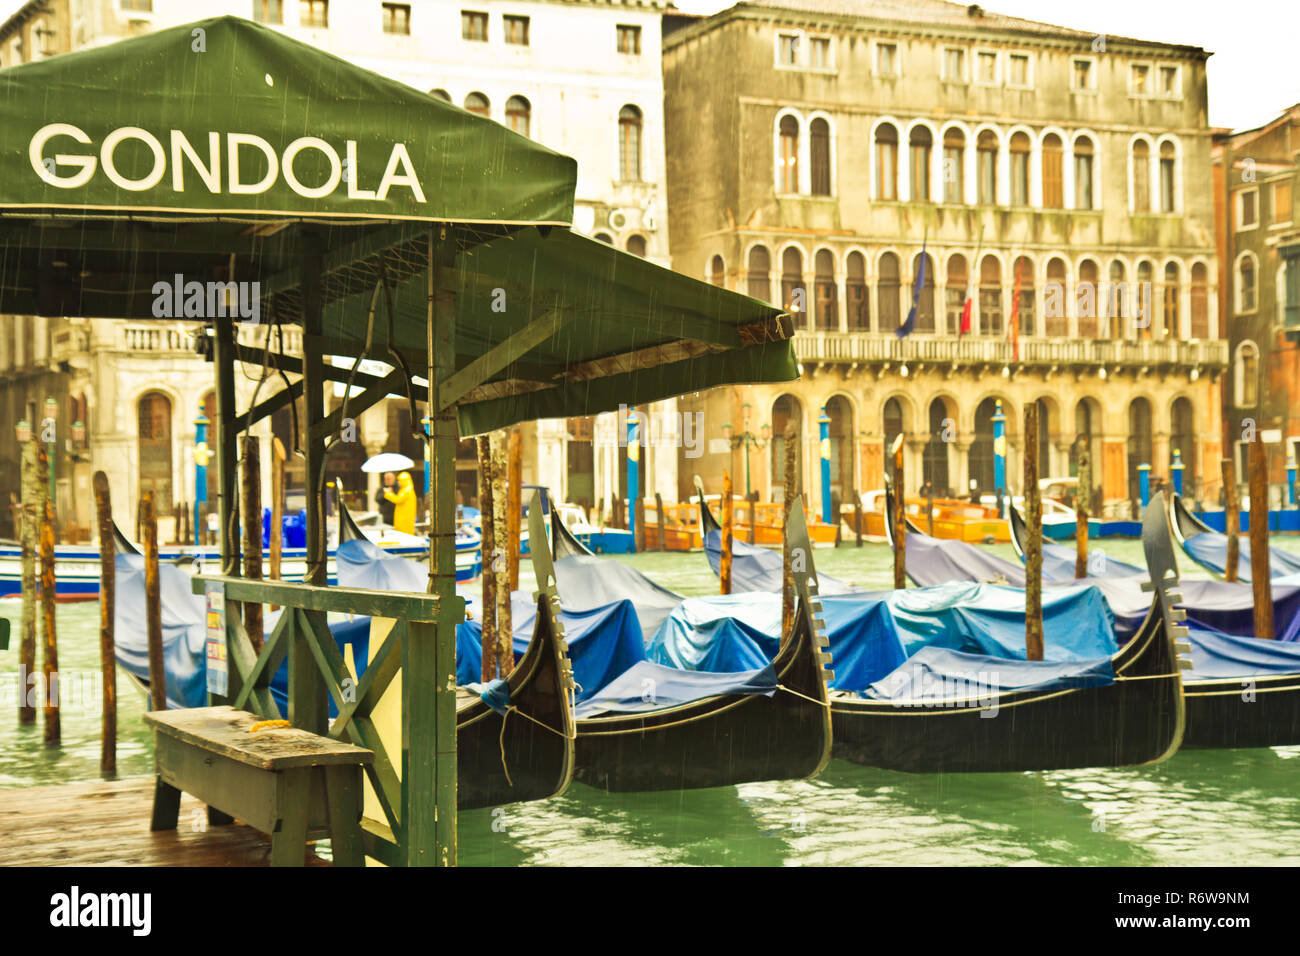 Acqua alta a Venezia - le inondazioni. Venezia, la capitale del nord Italia la Regione Veneto, è costruito su più di 100 piccole isole. Foto Stock